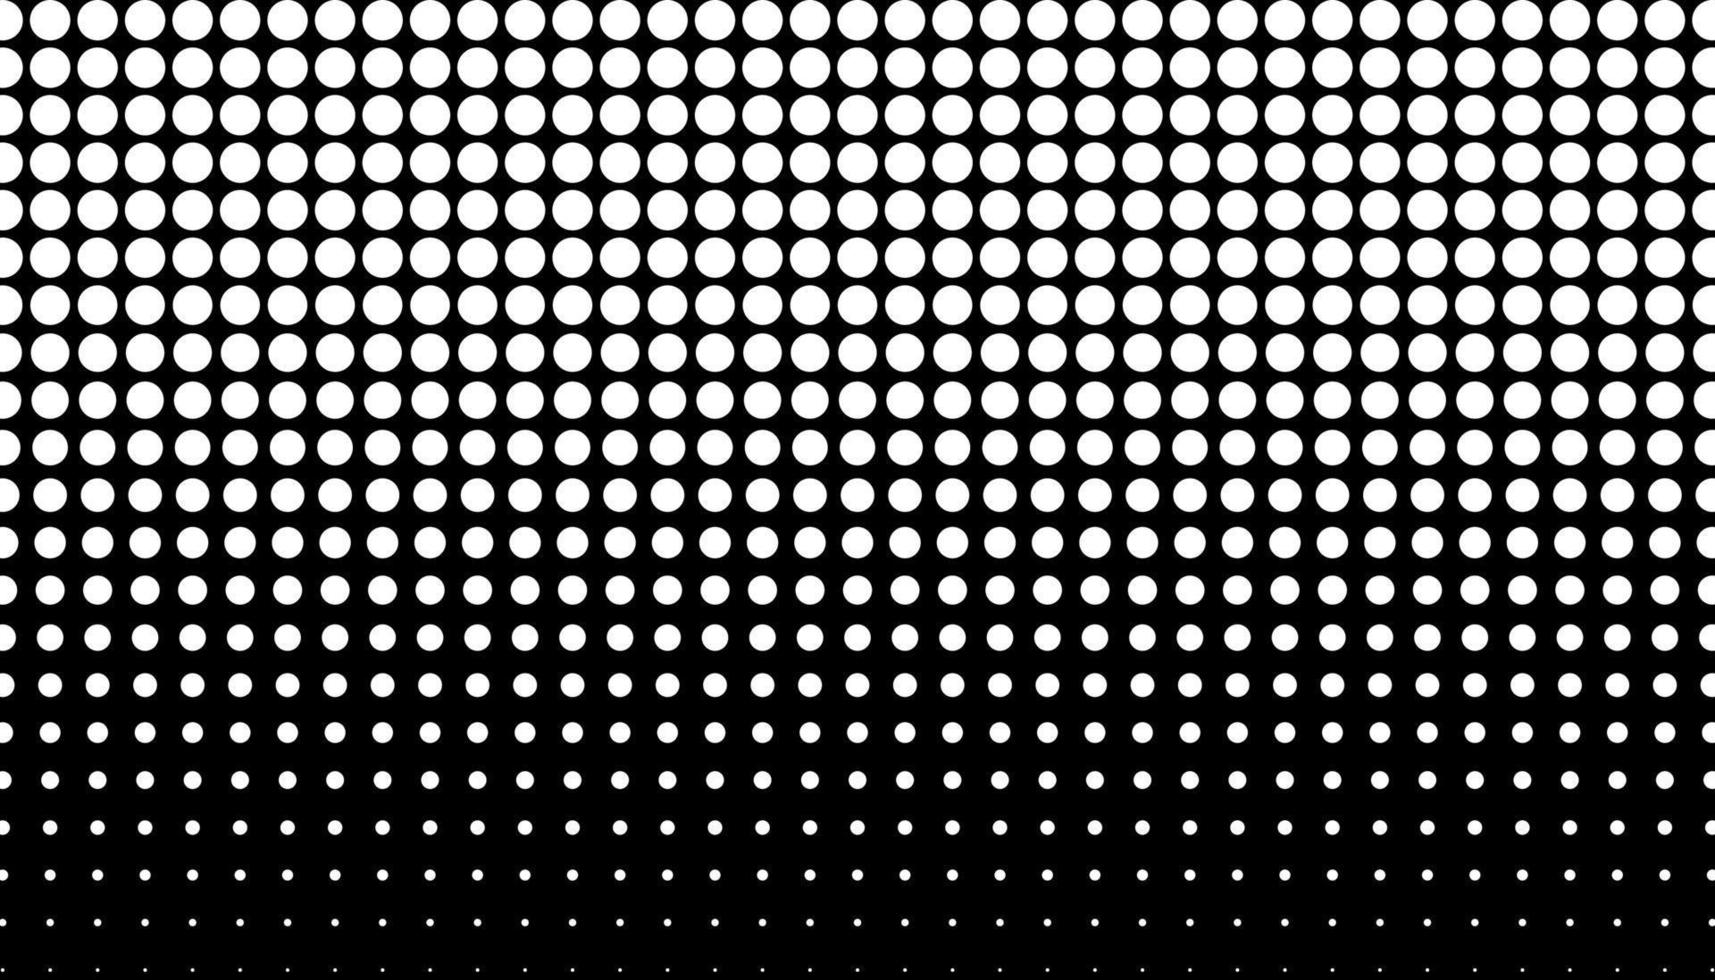 Retro-Halbtonverlauf aus Punkten. einfarbiger weißer und schwarzer Halbtonhintergrund mit Kreisen. Vektor-Illustration. vektor